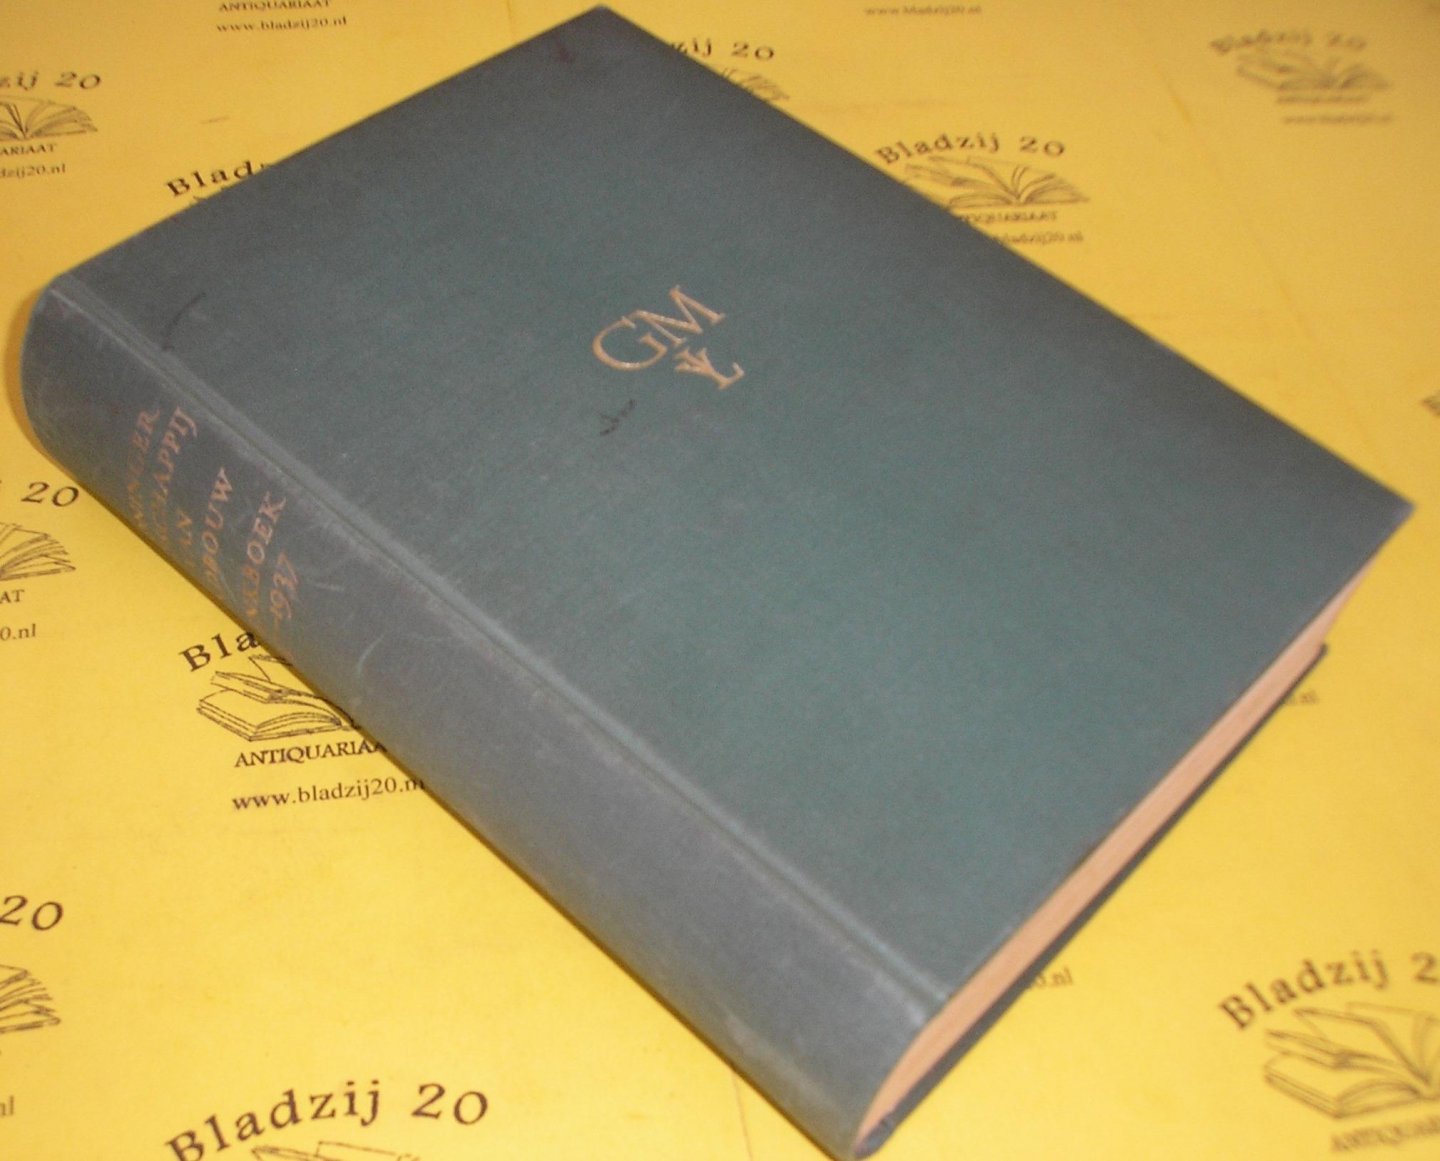 Addens, N.G. - Gedenkboek der Groninger Maatschappij van Landbouw 1837 - 1937.